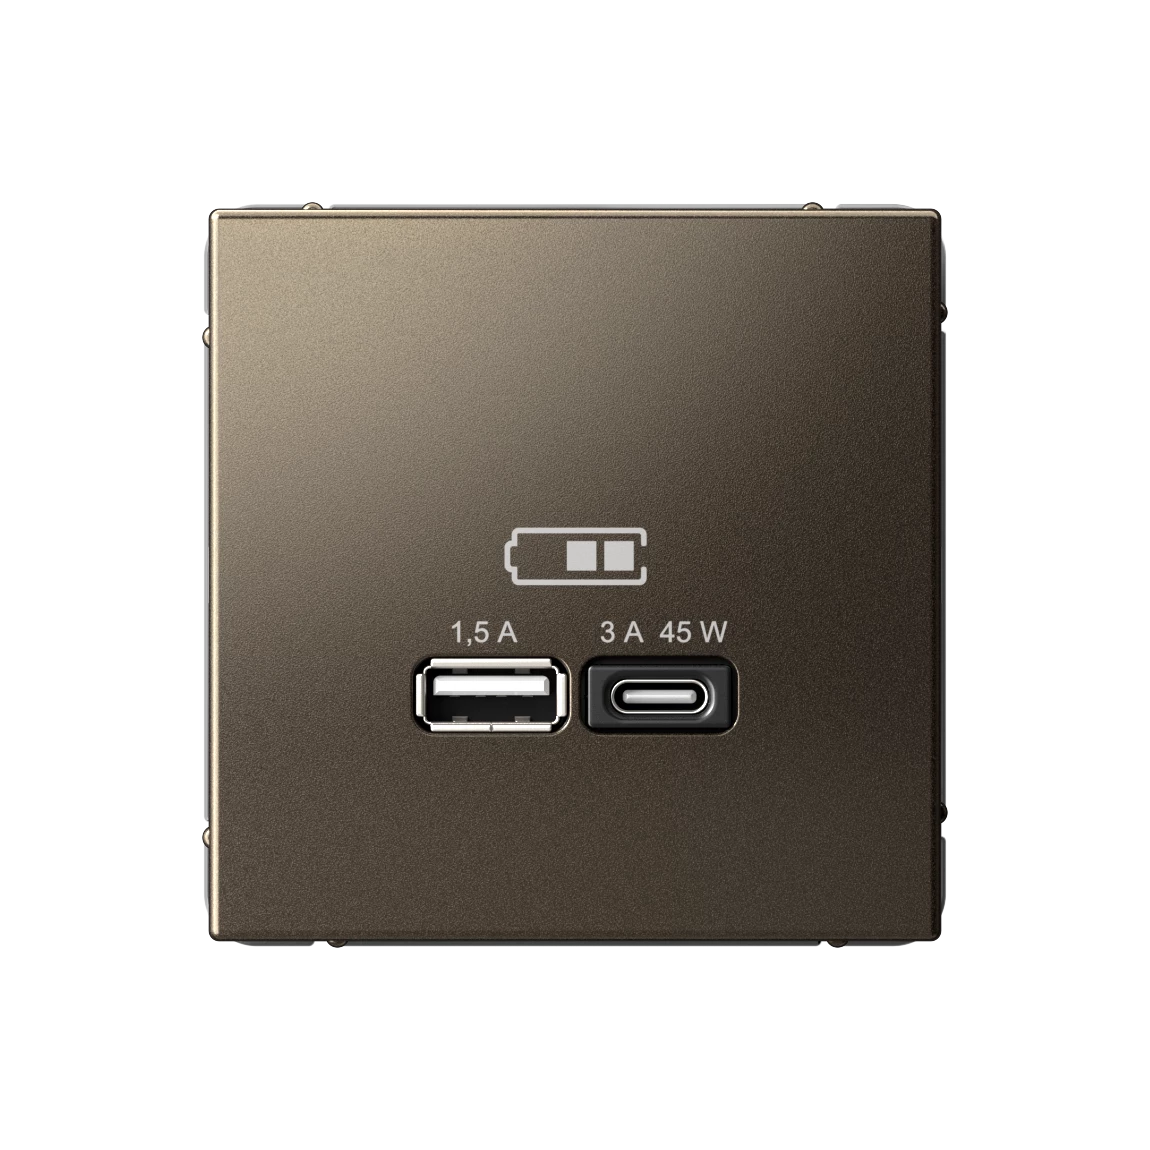  артикул GAL000629 название Розетка двойная для быcтрой зарядки USB, Тип А+С, 45Вт , Мокко, серия Art Gallery, Schneider Electric